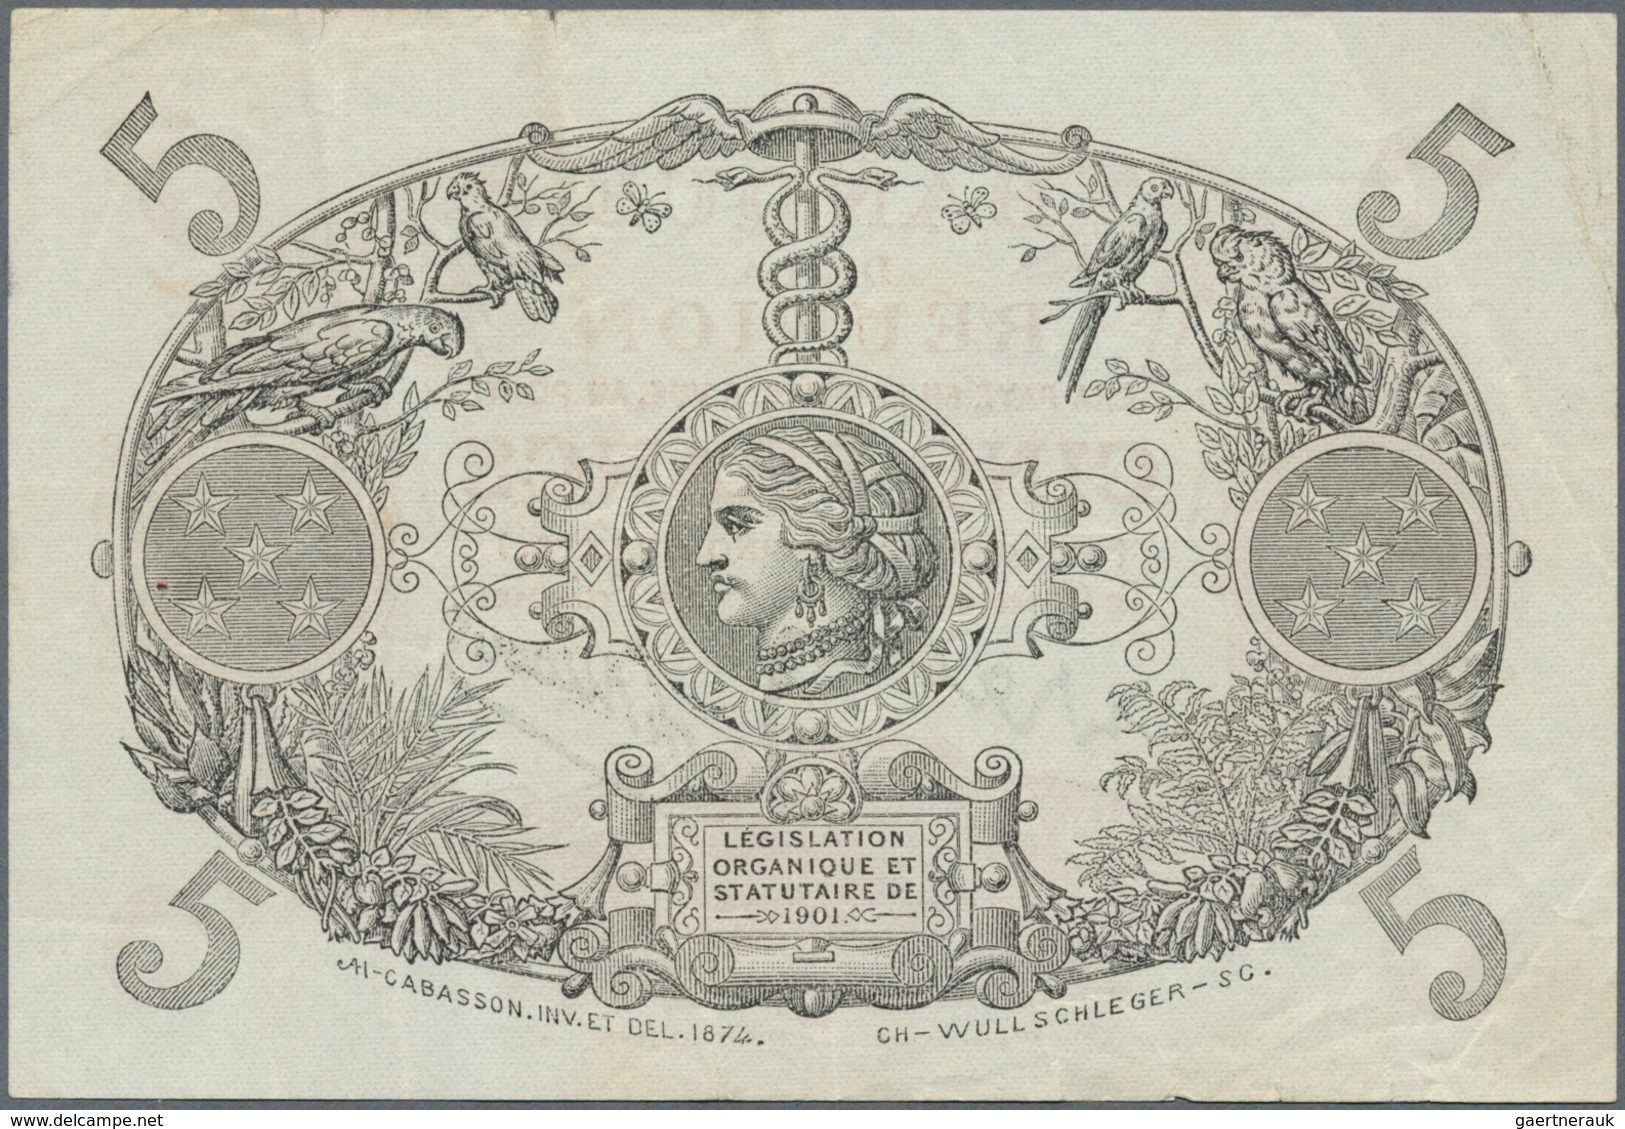 Réunion: Banque De La Réunion 5 Francs L.1901 P. 14, Several Folds In Paper, A Few Minor Border Tear - Réunion